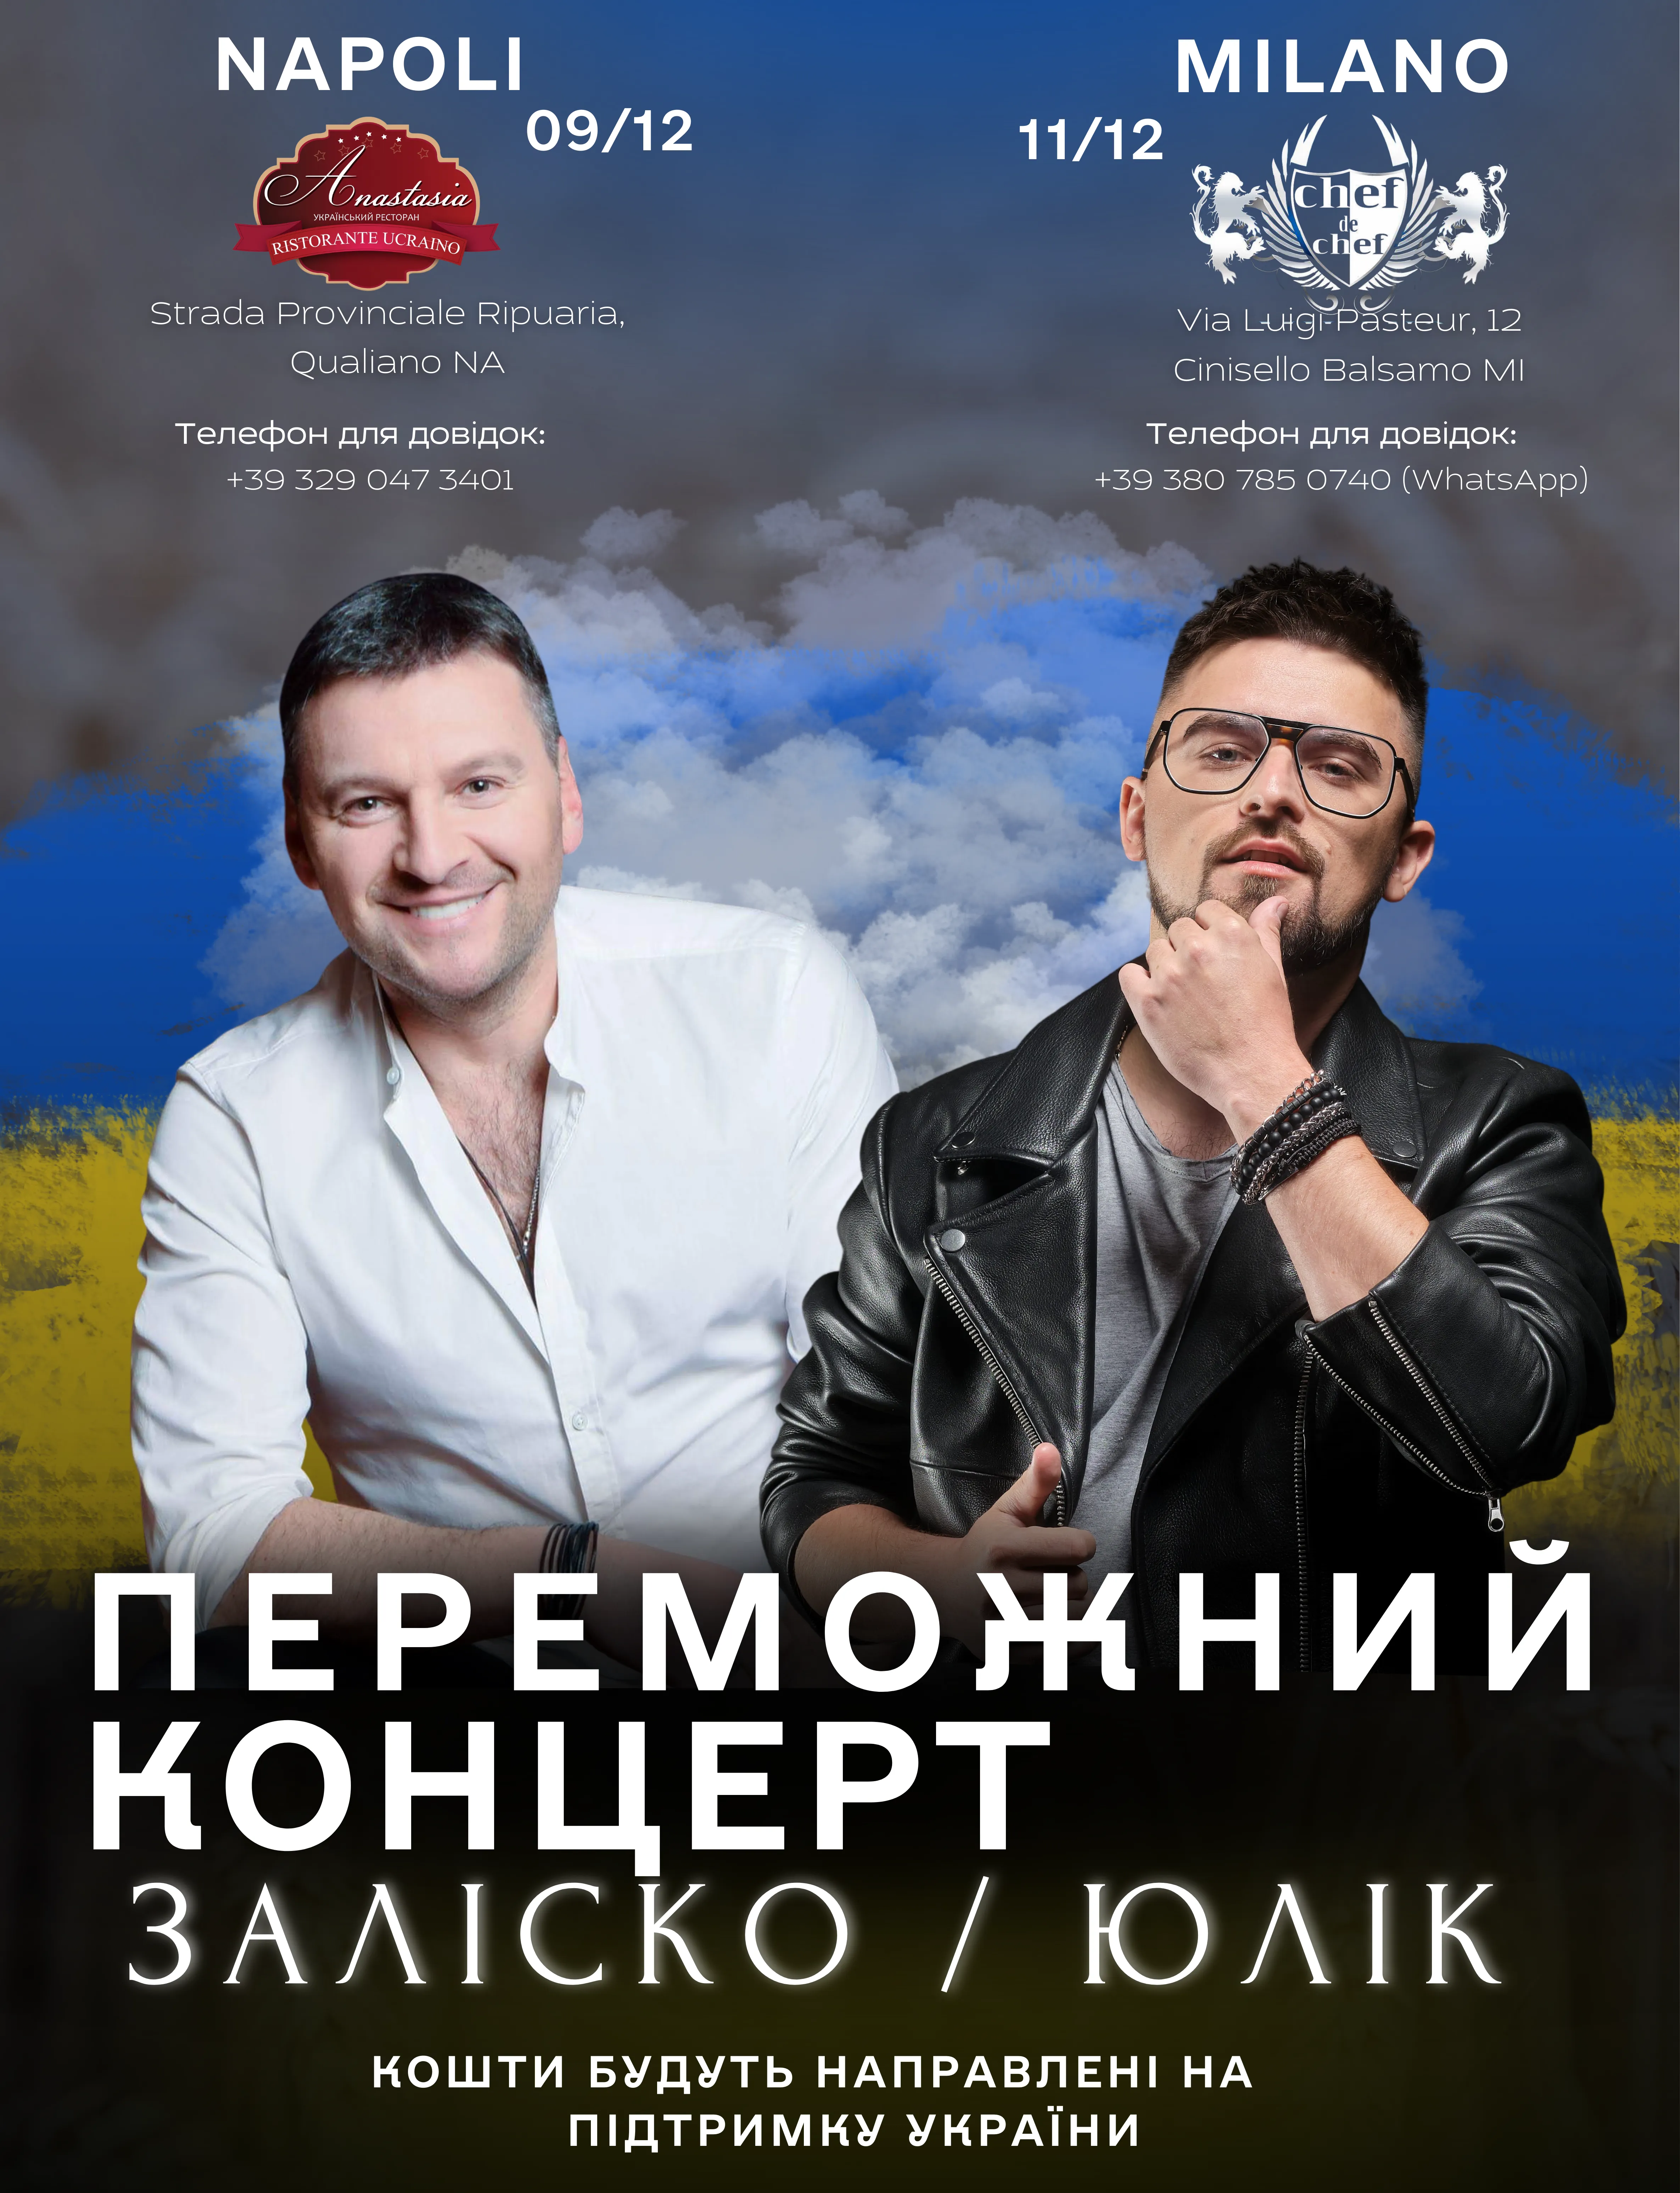 Юлик и Андрей Залиско дадут концерты в Италии